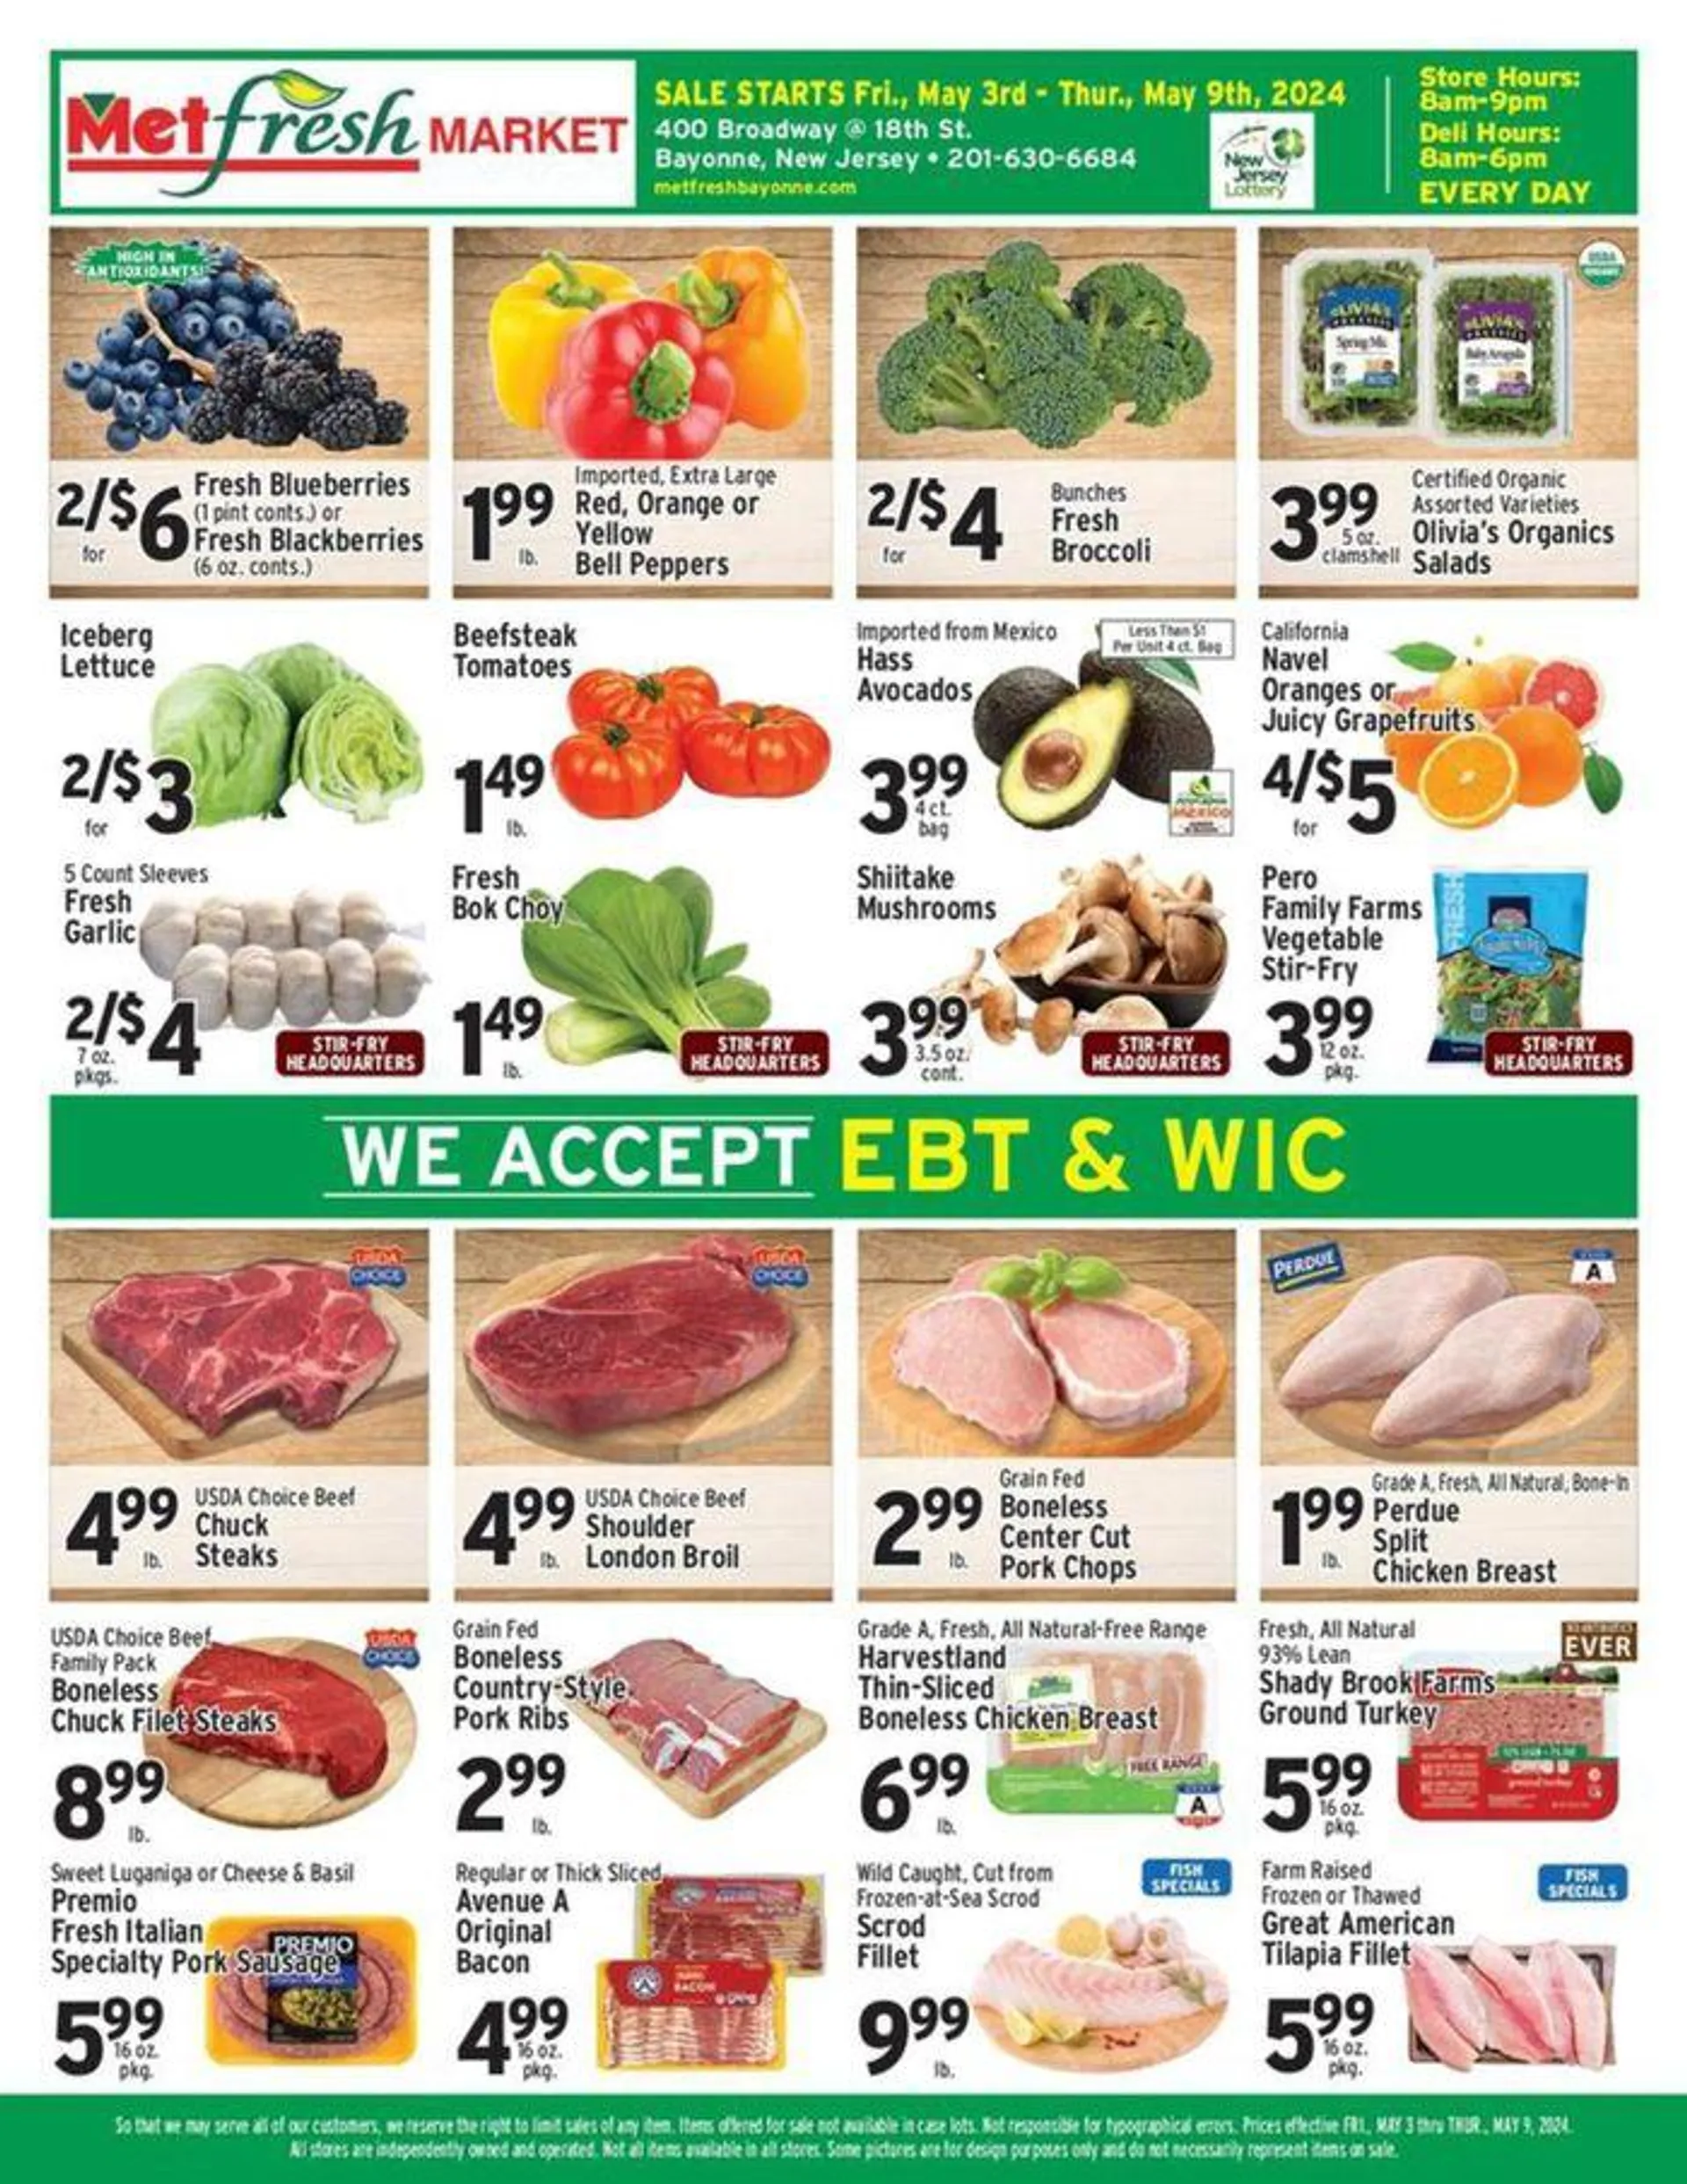 Met Foodmarkets weekly ad - 1